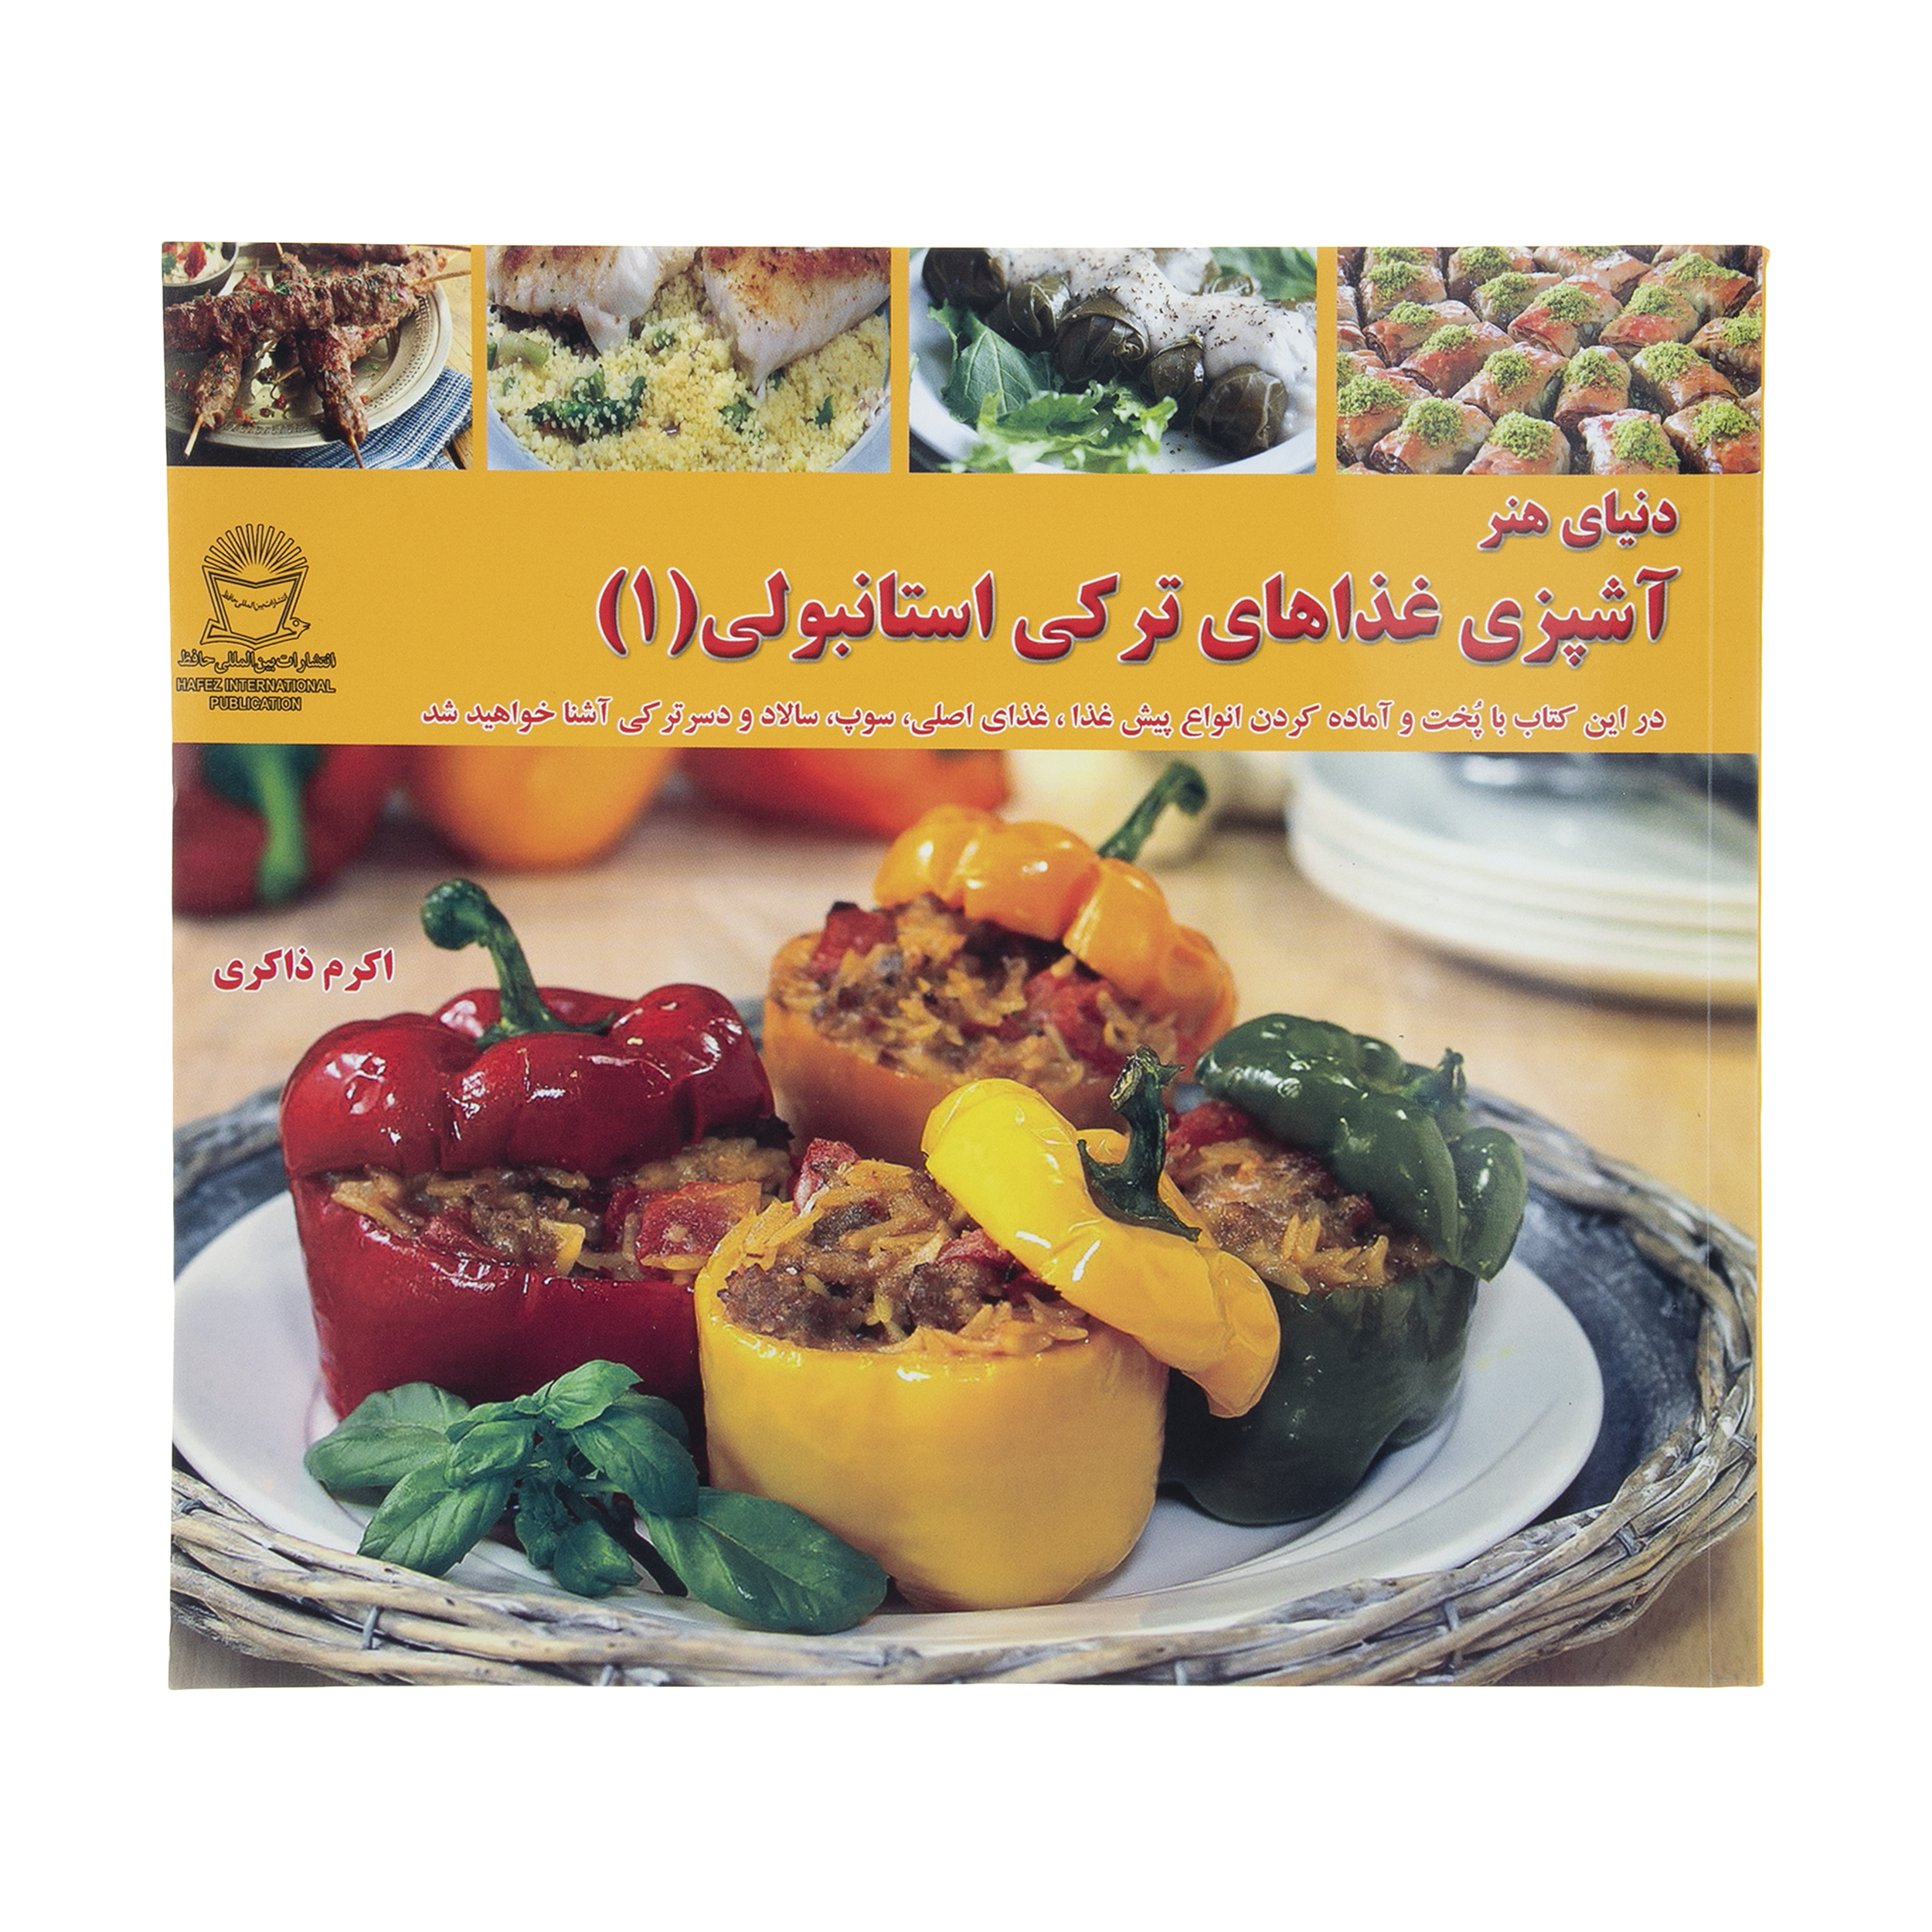 کتاب دنیای هنر آشپزی غذاهای ترکی استانبولی 1